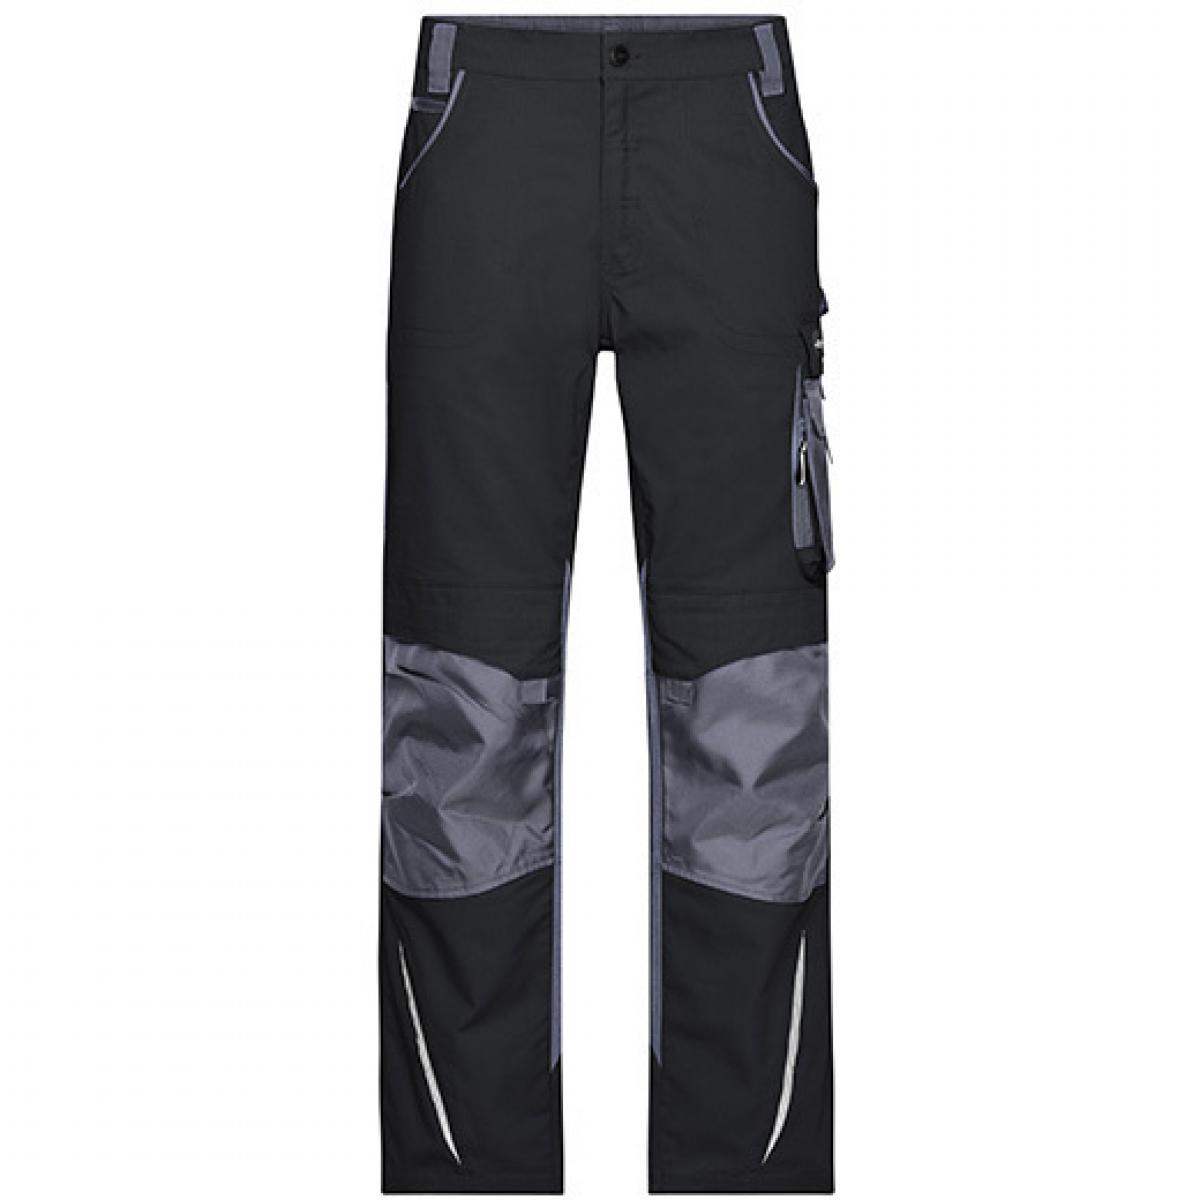 Hersteller: James+Nicholson Herstellernummer: JN832 Artikelbezeichnung: Workwear Pants -STRONG- / Arbeitshose lang Farbe: Black/Carbon